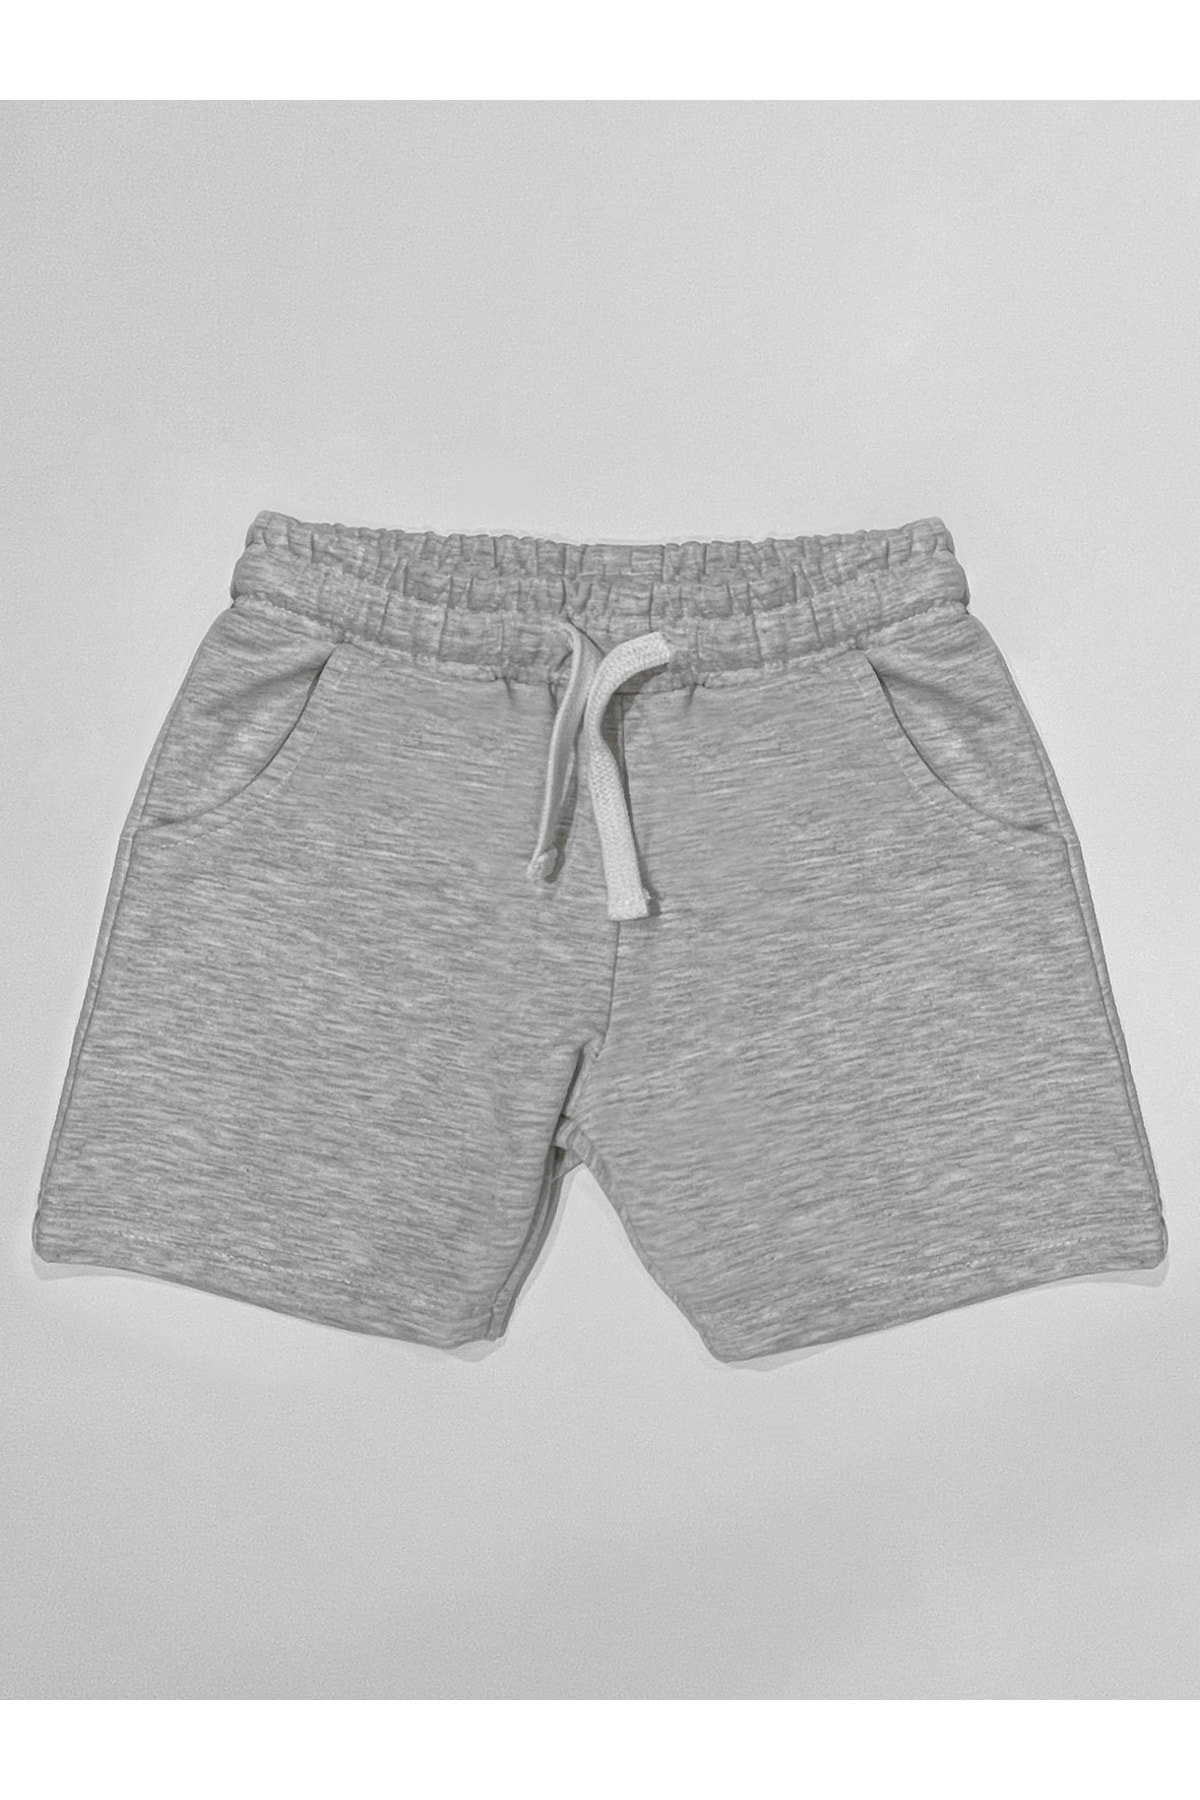 Levně Denokids Basic Boys' Cotton Light Gray Shorts